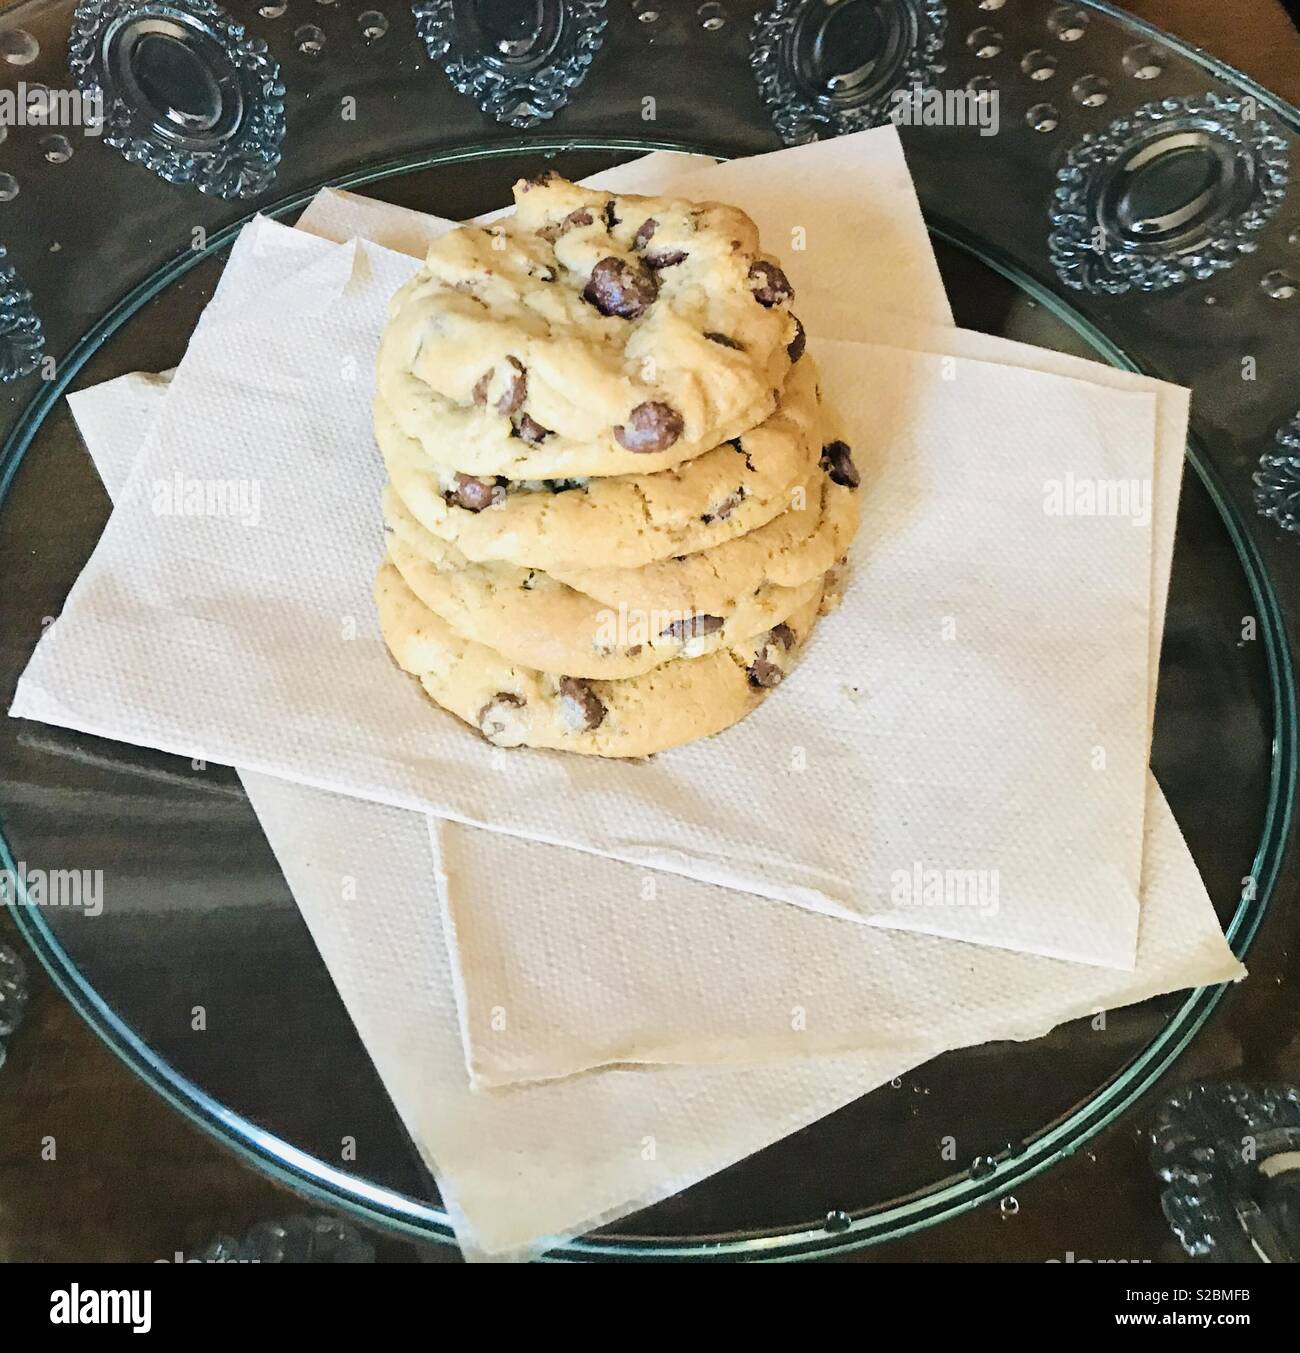 Belle et délicieux cookies au chocolat délicieux assis sur une plaque dans la cuisine Banque D'Images